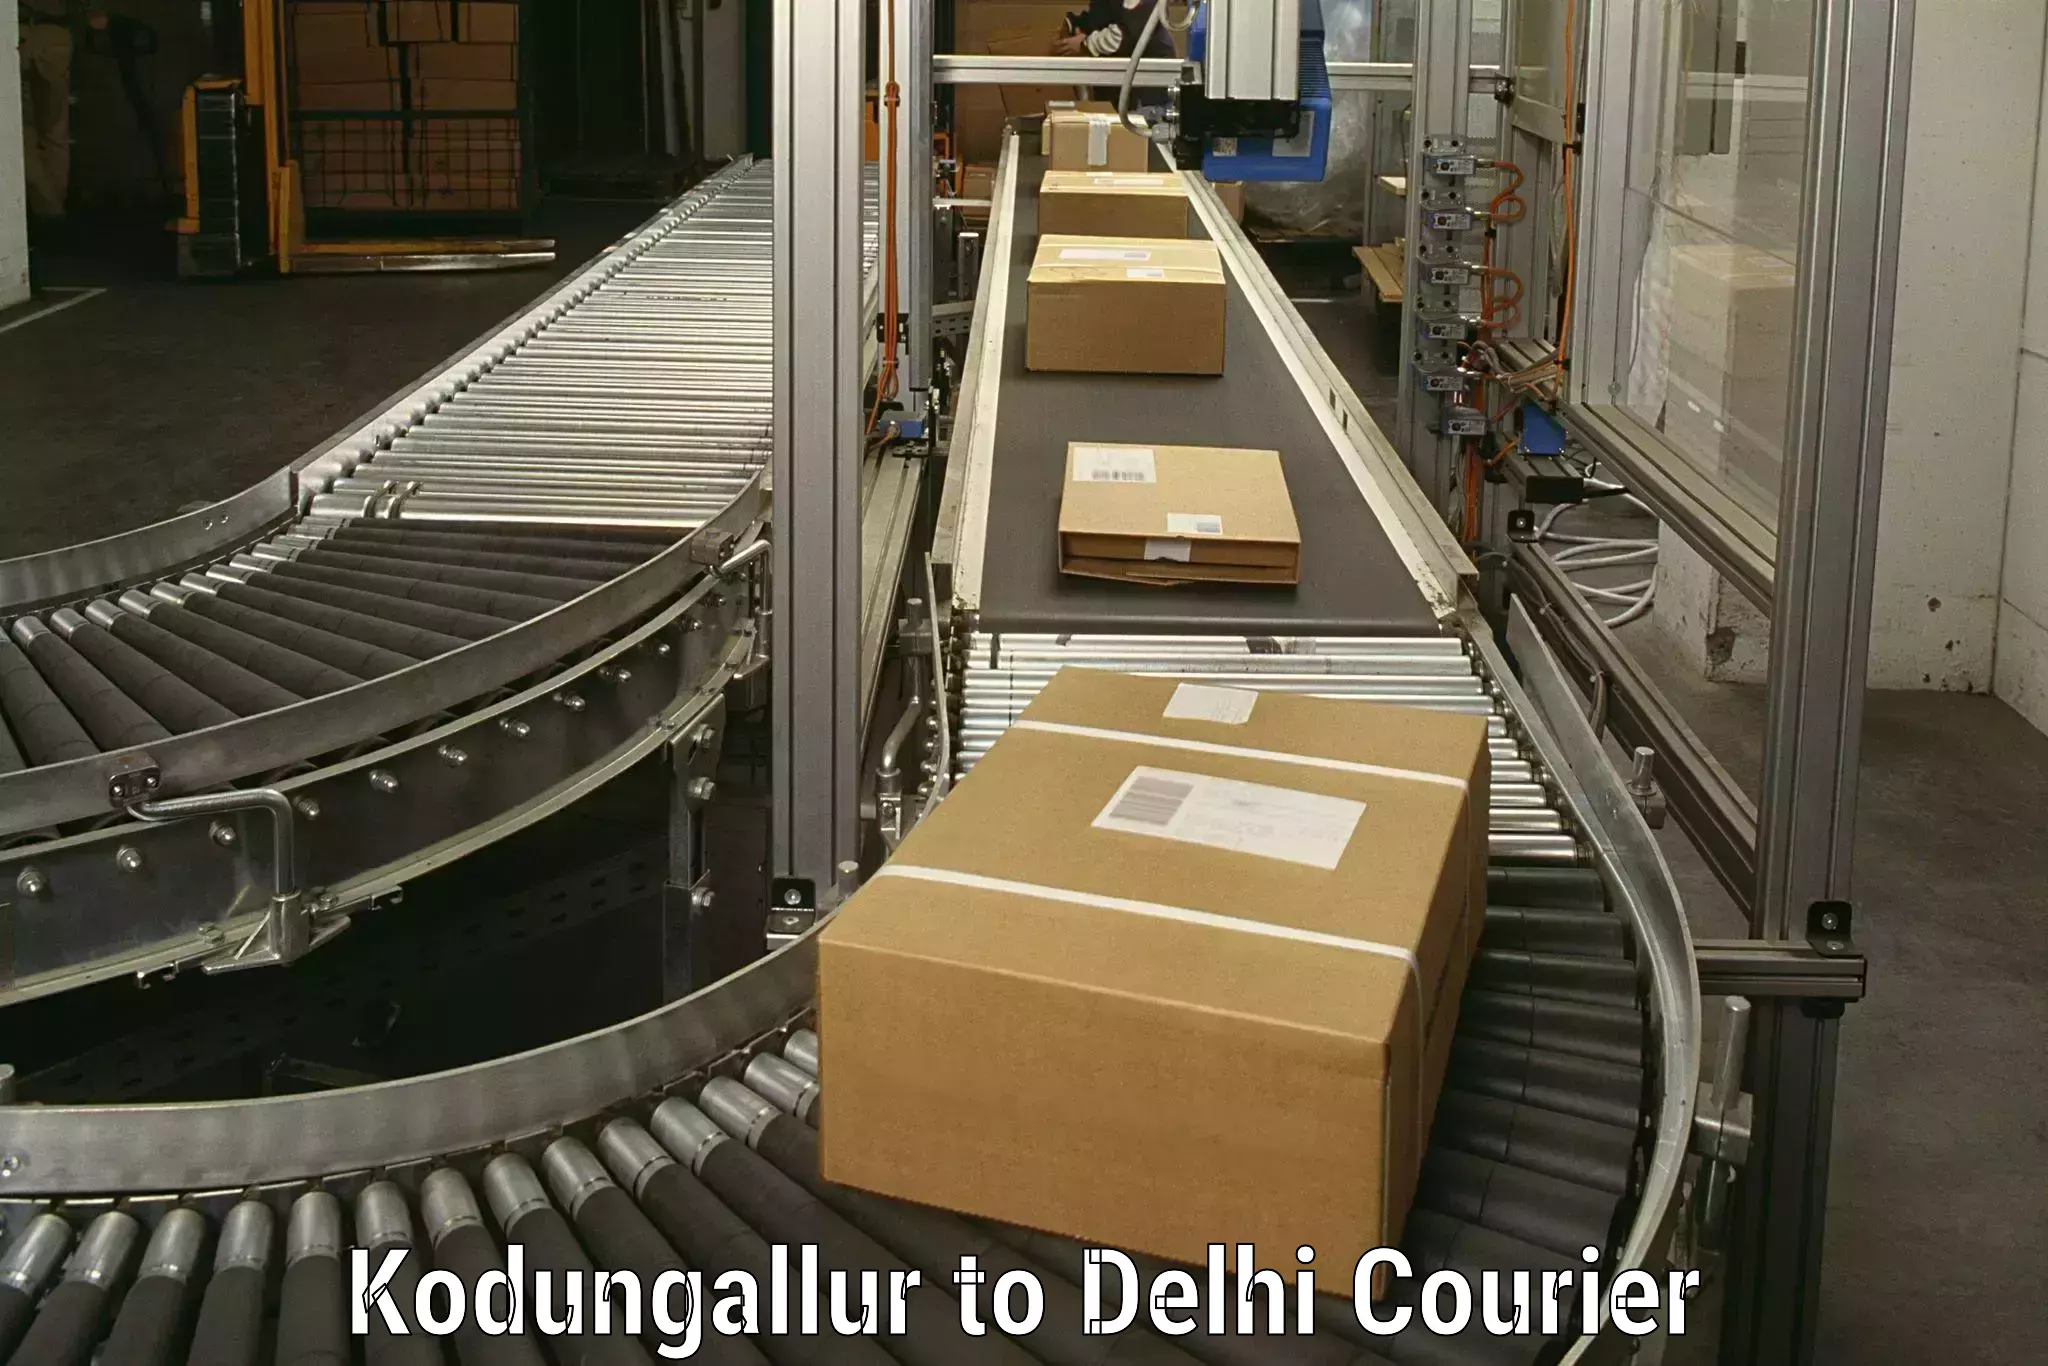 Furniture transport company Kodungallur to Jhilmil